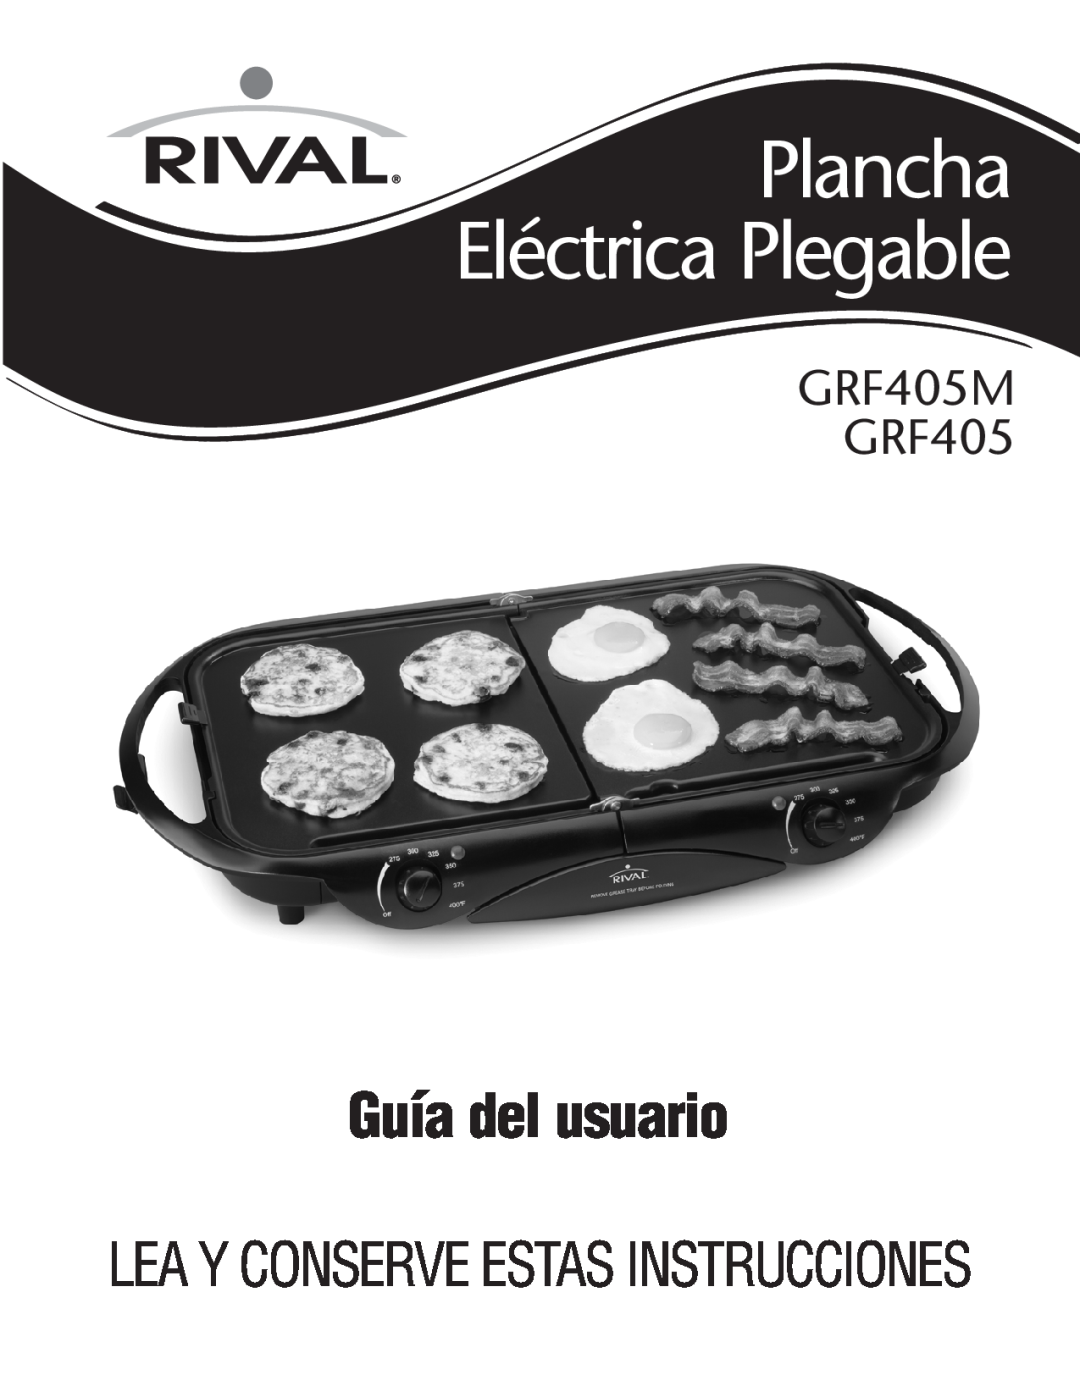 Rival manual Guía del usuario, Plancha, Eléctrica Plegable, GRF405M GRF405, Leay Conserveestas Instrucciones 